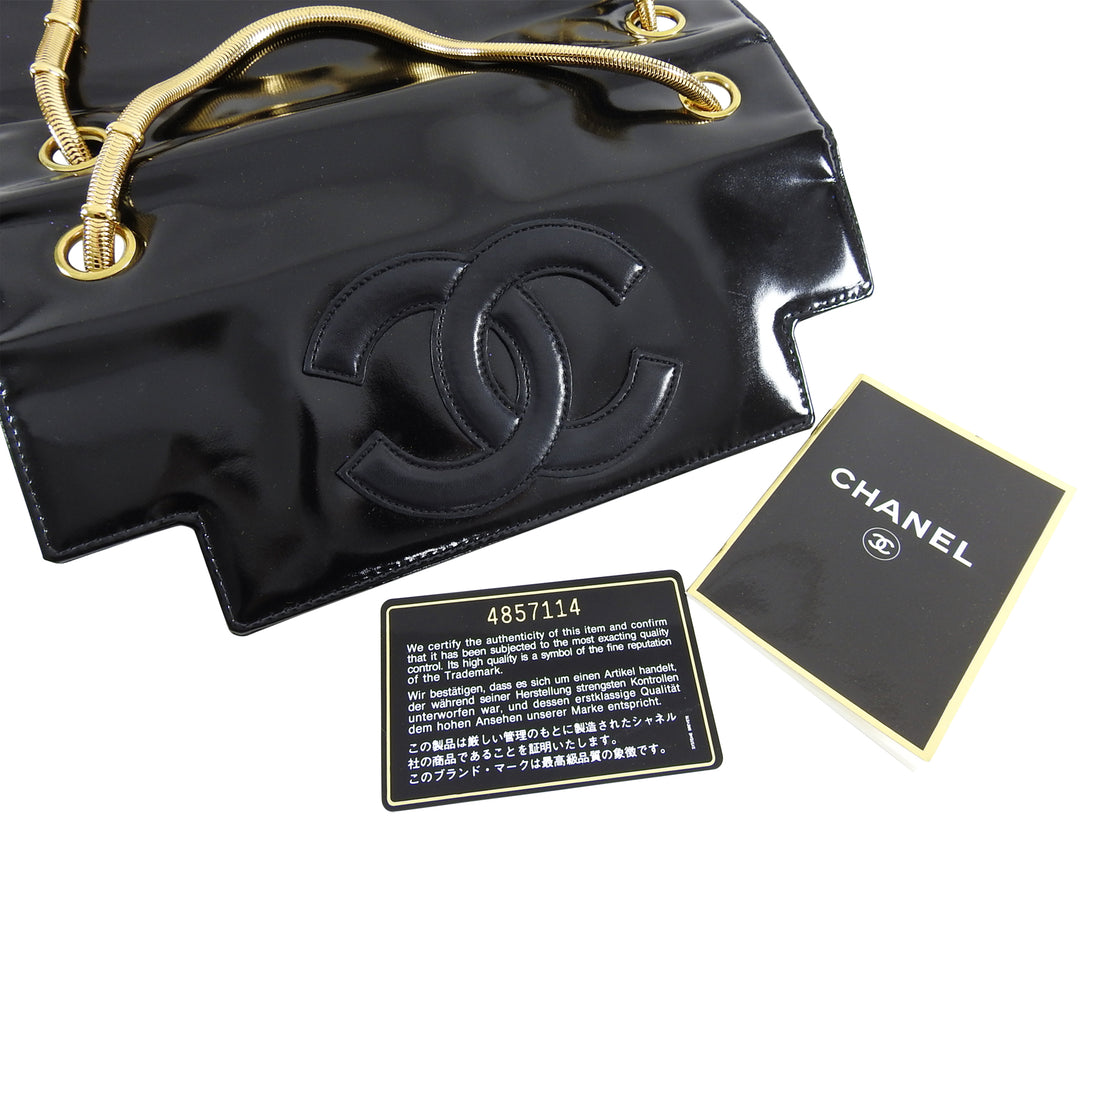 Chanel collectable Arrow brooch 2018